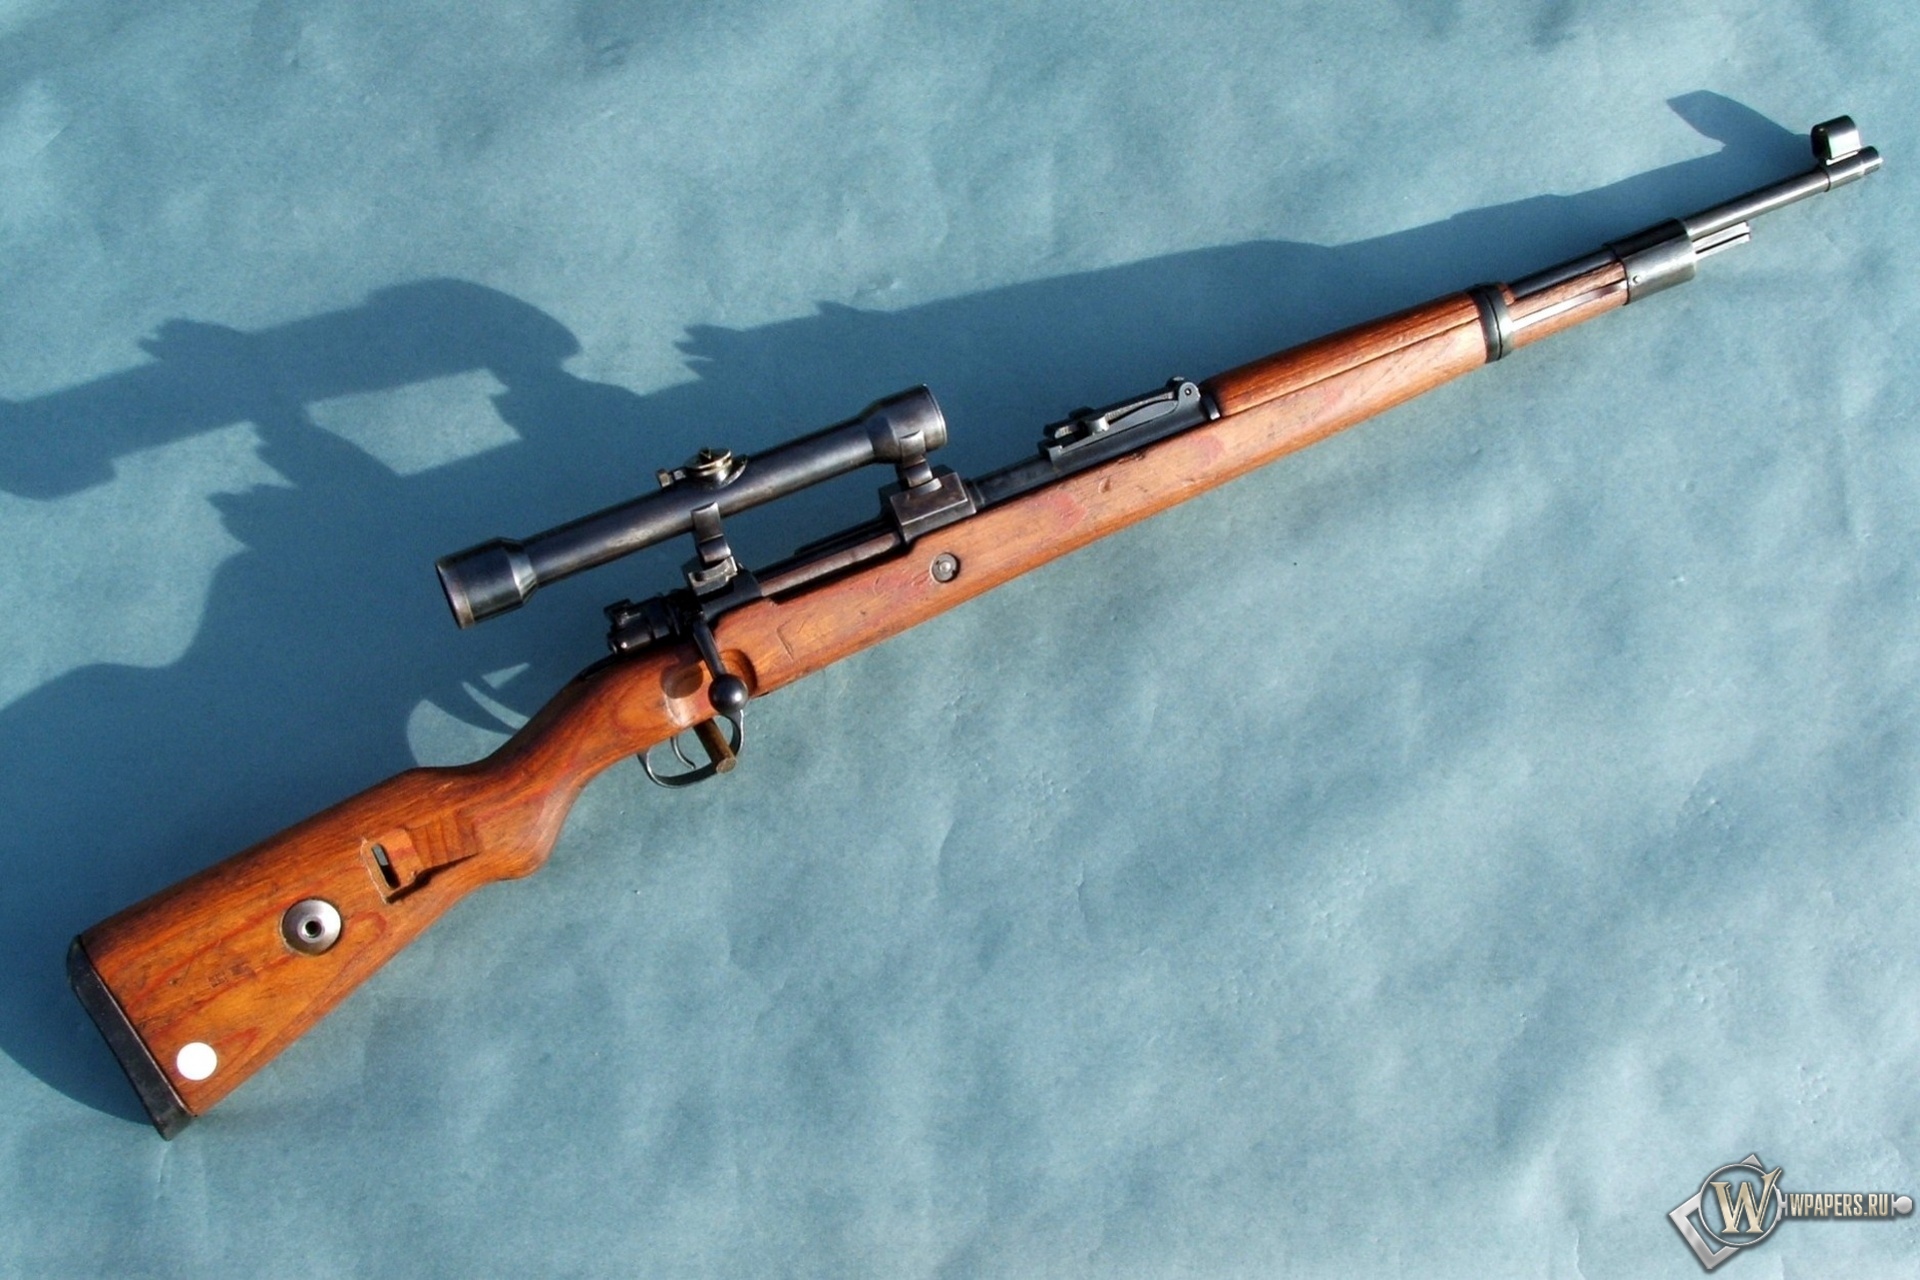 Mauser Gewehr Kar-98 1920x1280